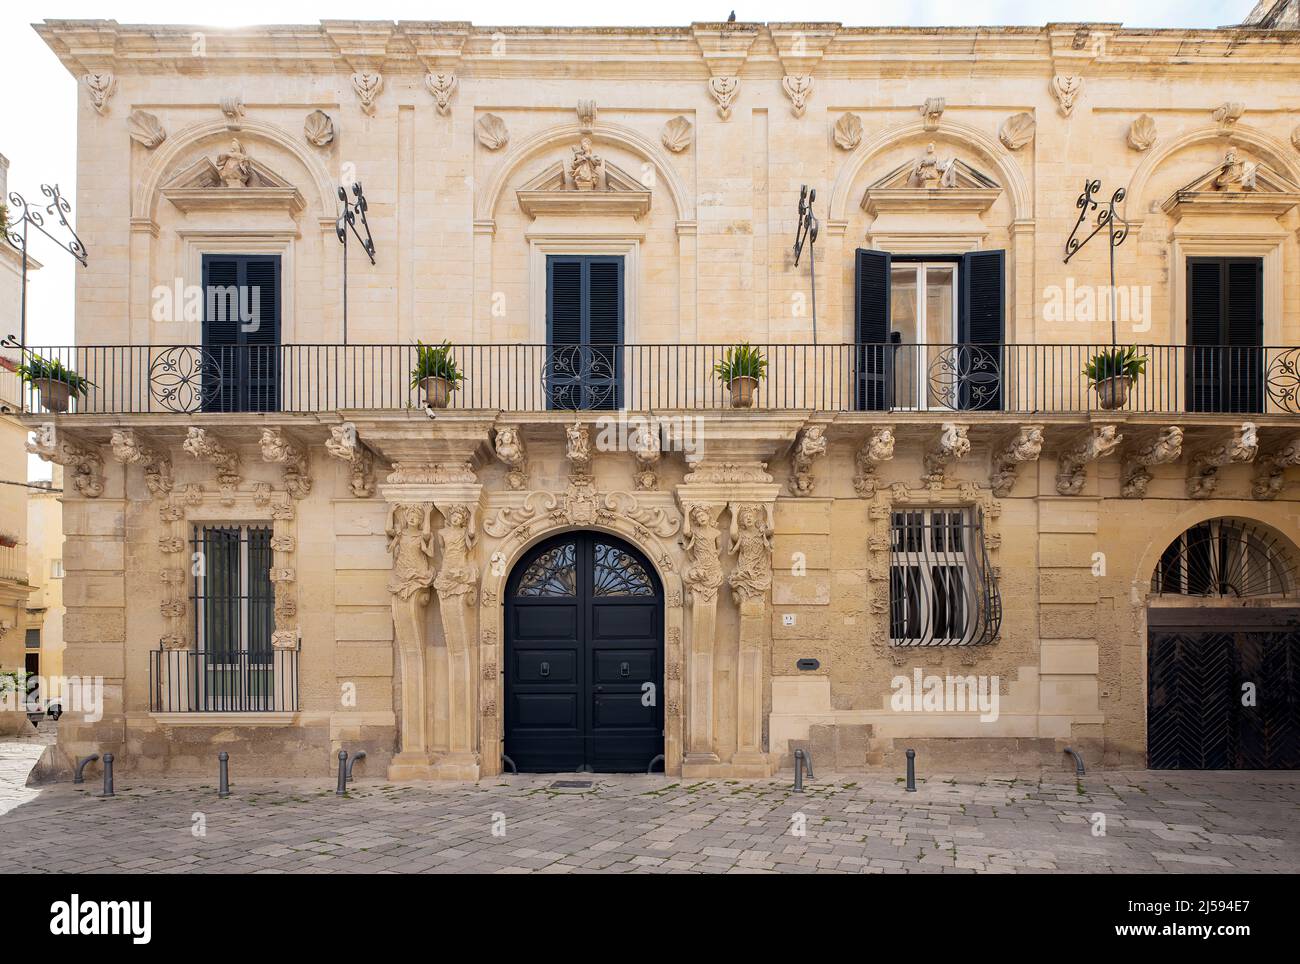 Il Palazzo Marrese è uno degli edifici in stile barocco più suggestivi di Lecce. Situato nella piazzetta Ignazio Falconieri, l'edificio ha un incredibile Foto Stock